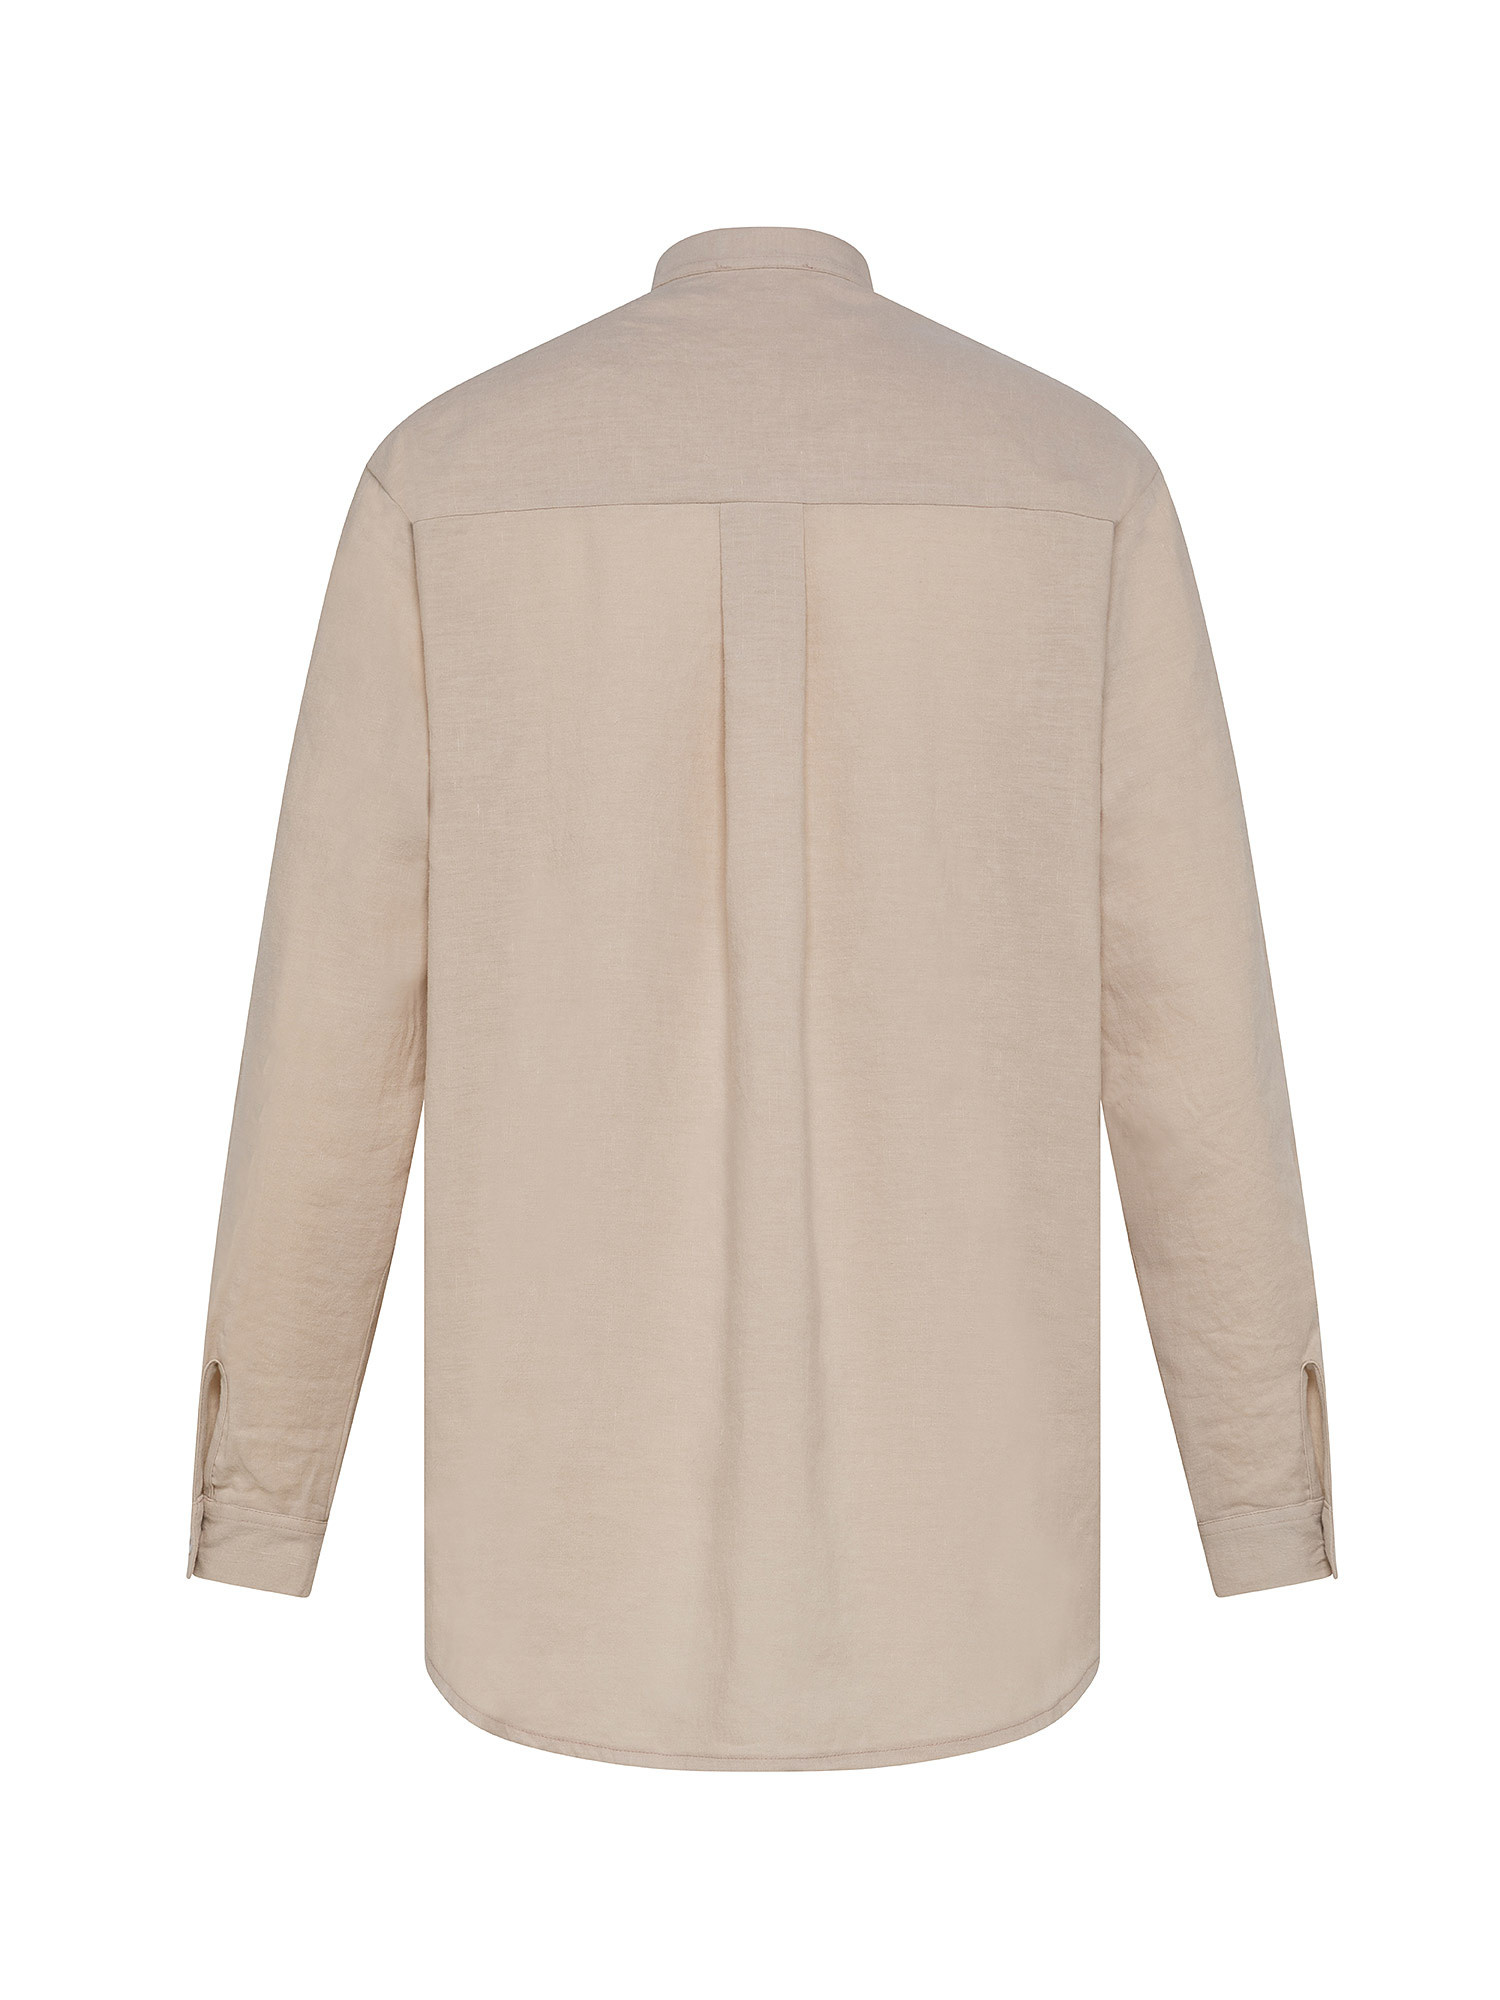 Solid color linen blend shirt, Beige, large image number 1